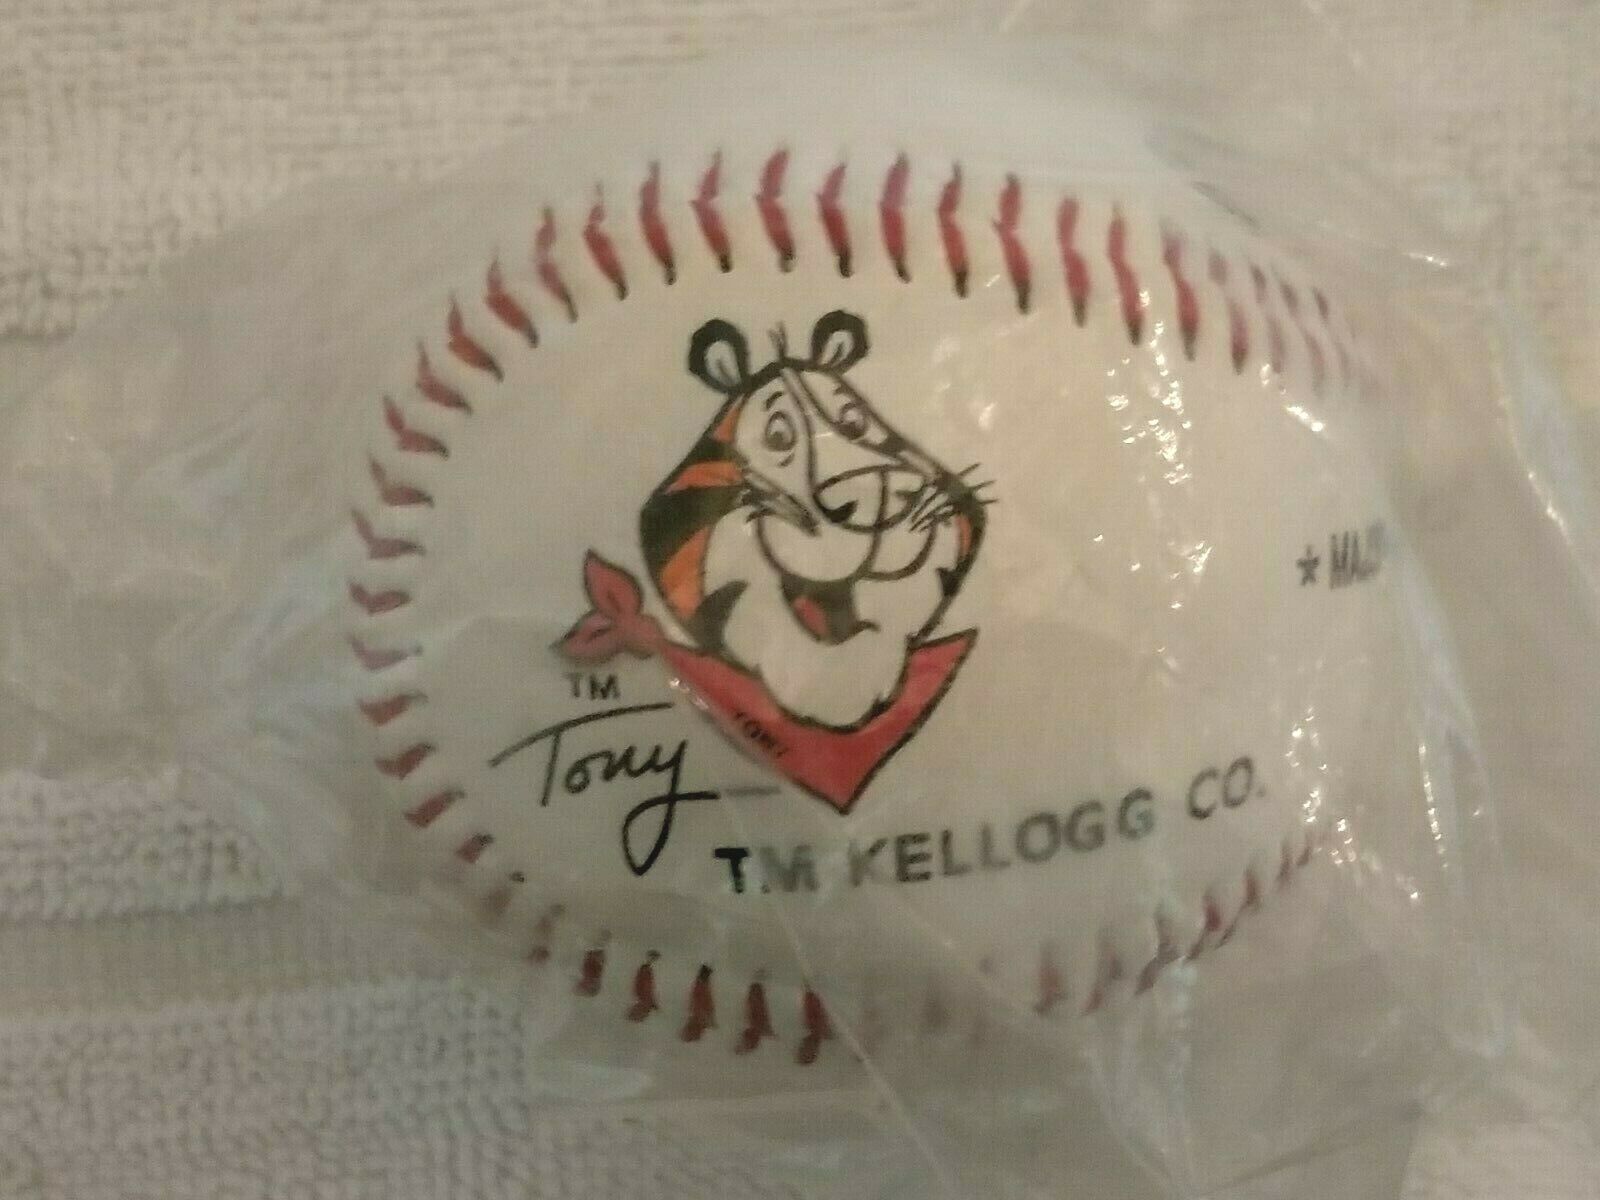 KELLOGG'S TONY THE TIGER MLB RAWLINGS OFFICIAL BASEBALL 1991 NEW